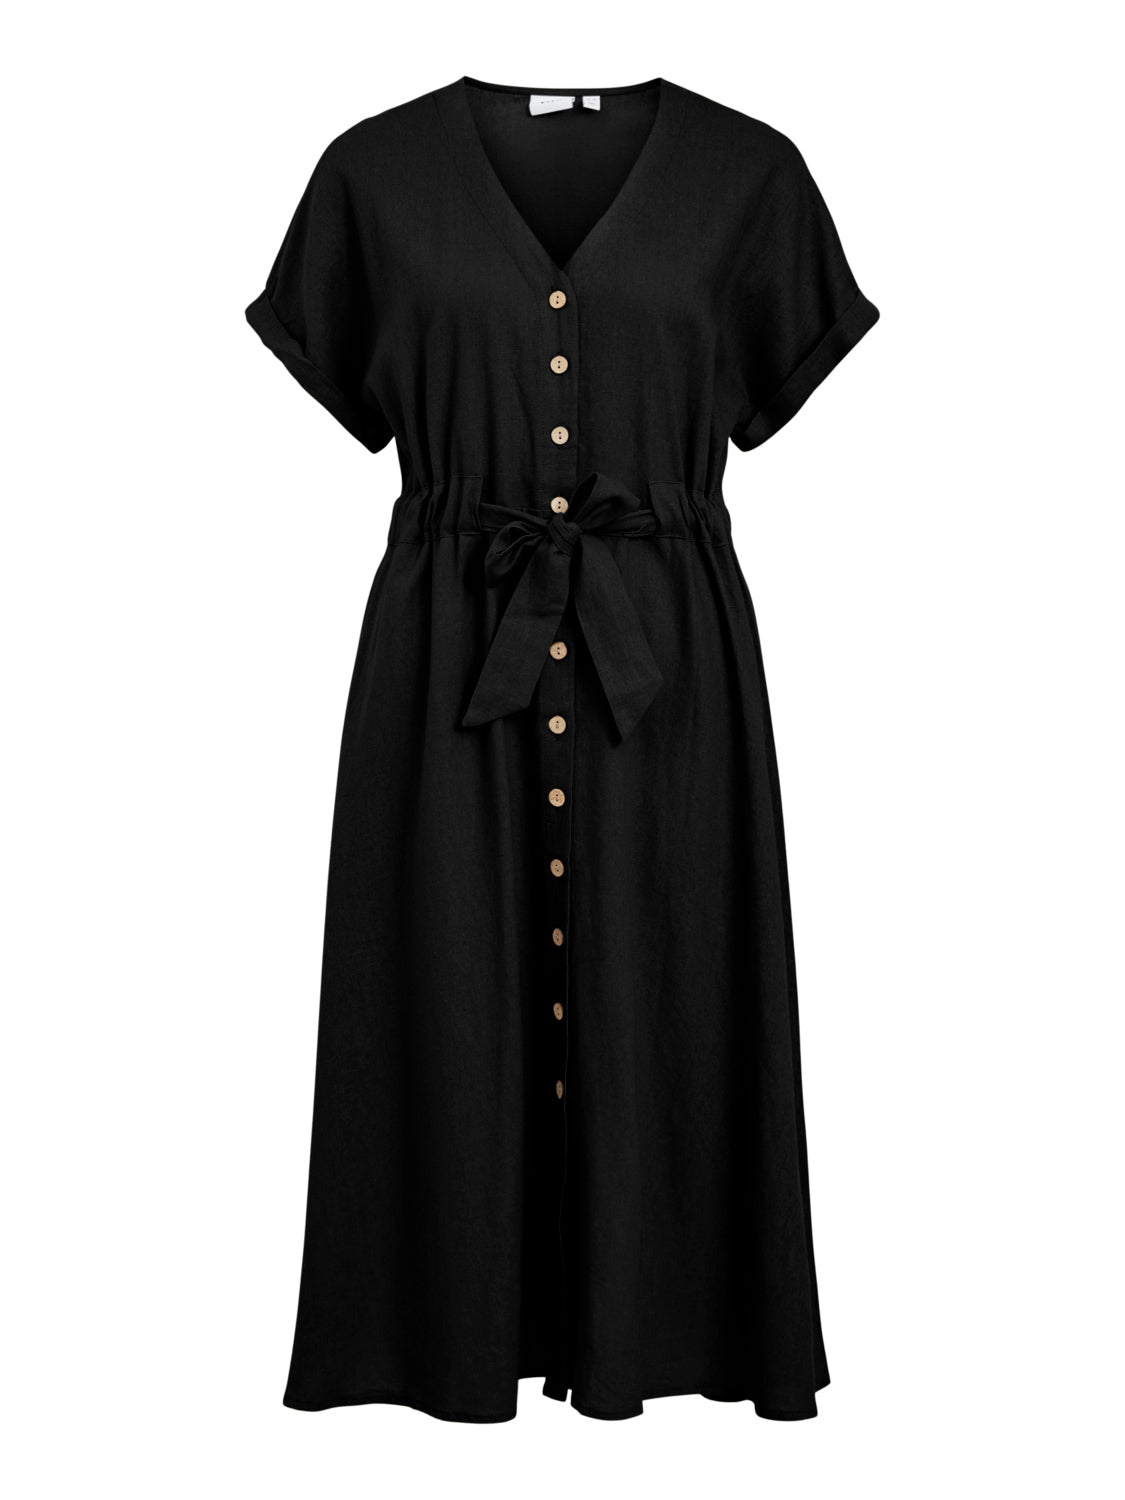 VINURIA Dress - Black